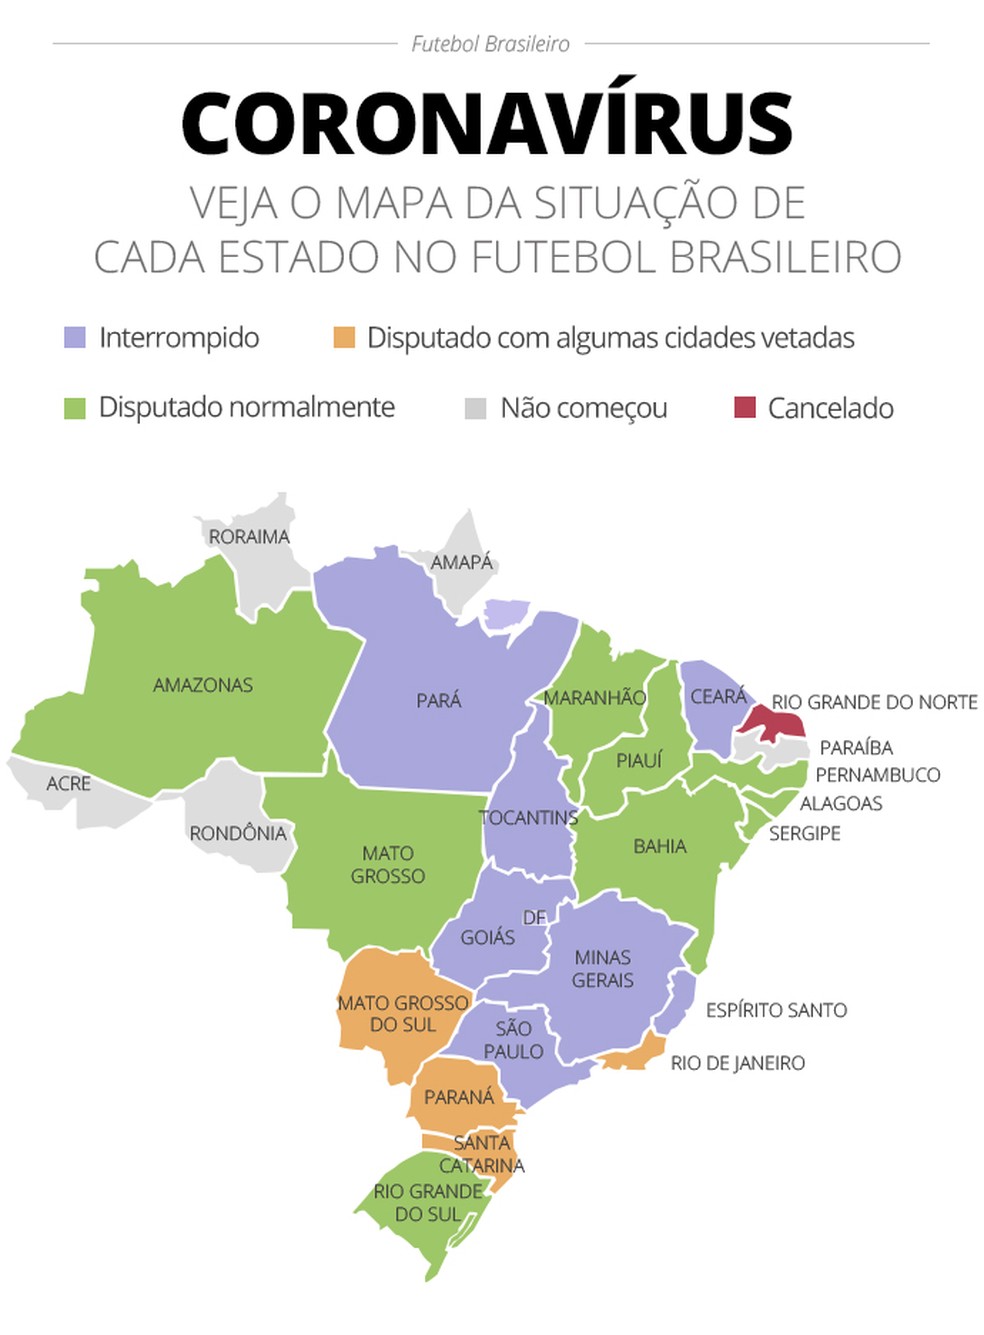 Mapa mostra a situação de cada estado no futebol brasileiro — Foto: Infografia